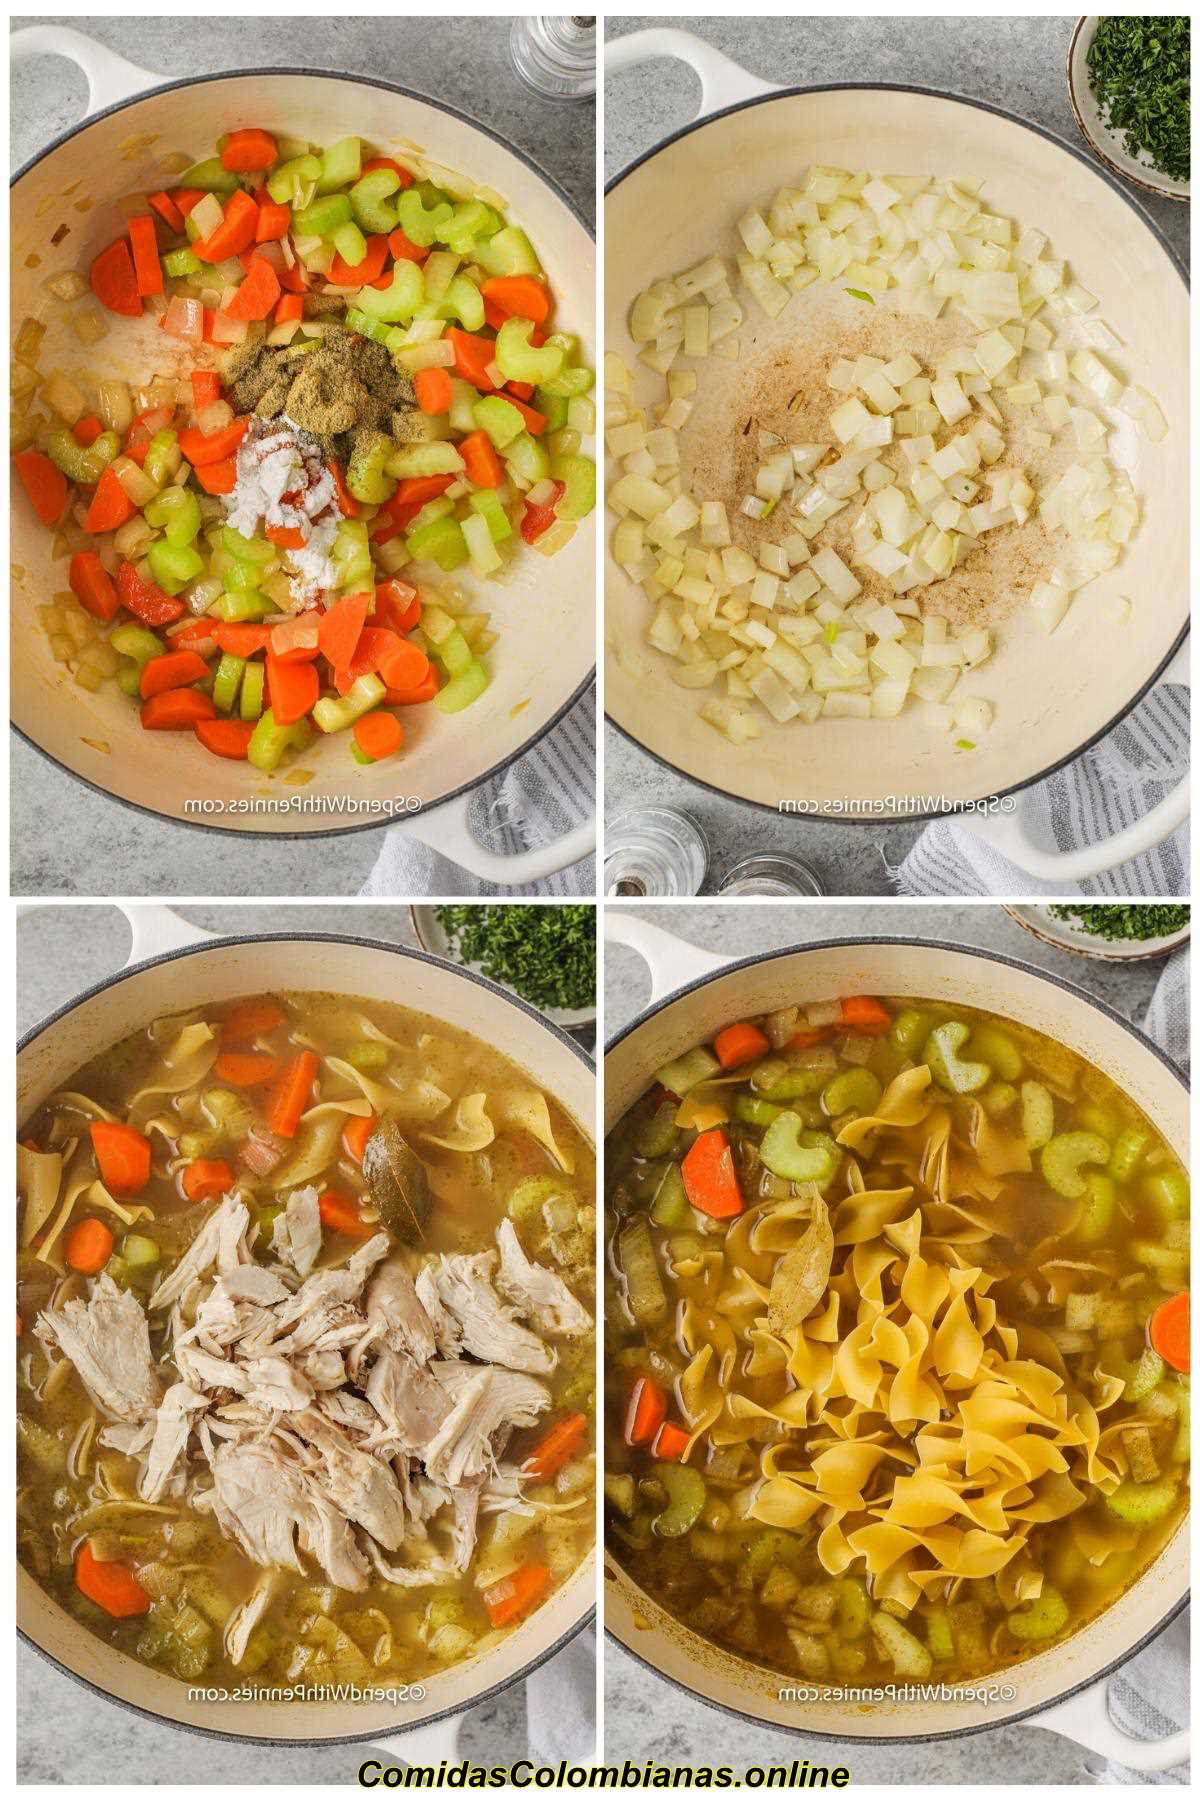 proceso de agregar ingredientes a la olla para hacer sopa de fideos con pollo casera